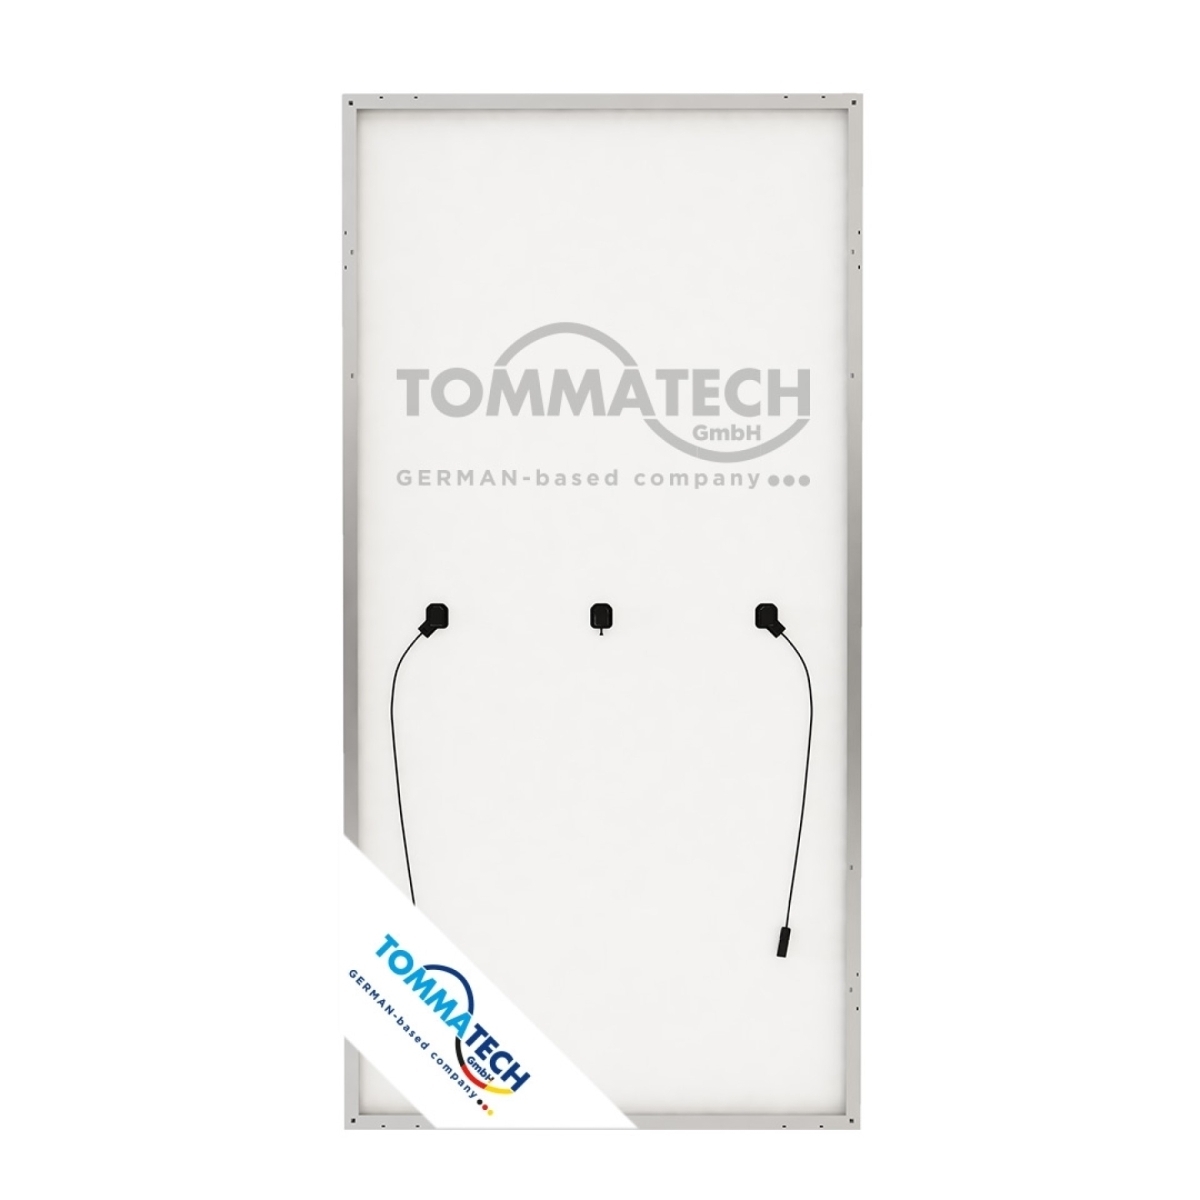 Tommatech 460Watt 144PM Half-Cut MB Güneş Paneli